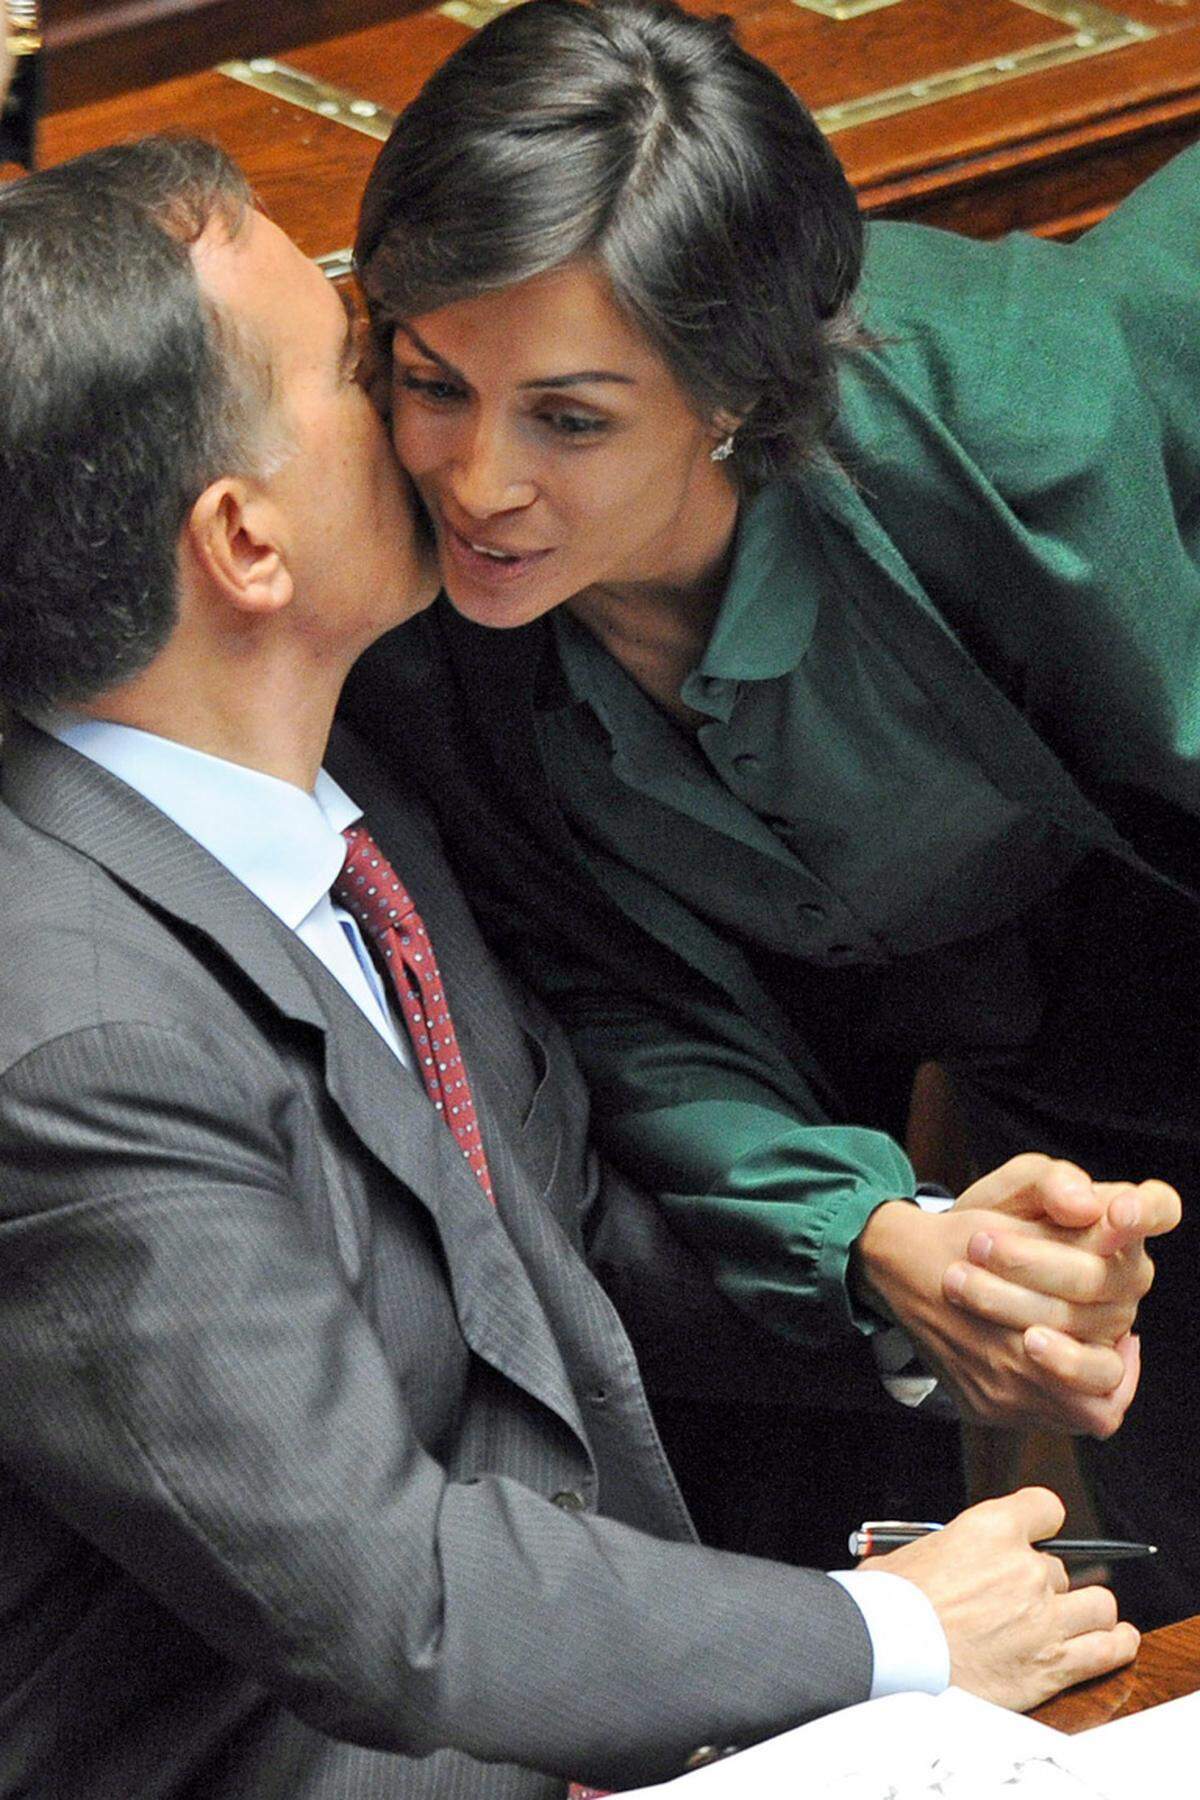 Auch ihre politische Karriere verdankt die Juristin dem Cavaliere. Für die Berlusconi-Partei wurde sie 2006 in die Abgeordnetenkammer gewählt, später wurde sie Ministerin für Gleichstellung. "Berlusconi wird in der Politik bleiben," sagt sie und stellt sich kämpferisch hinter ihren Chef.